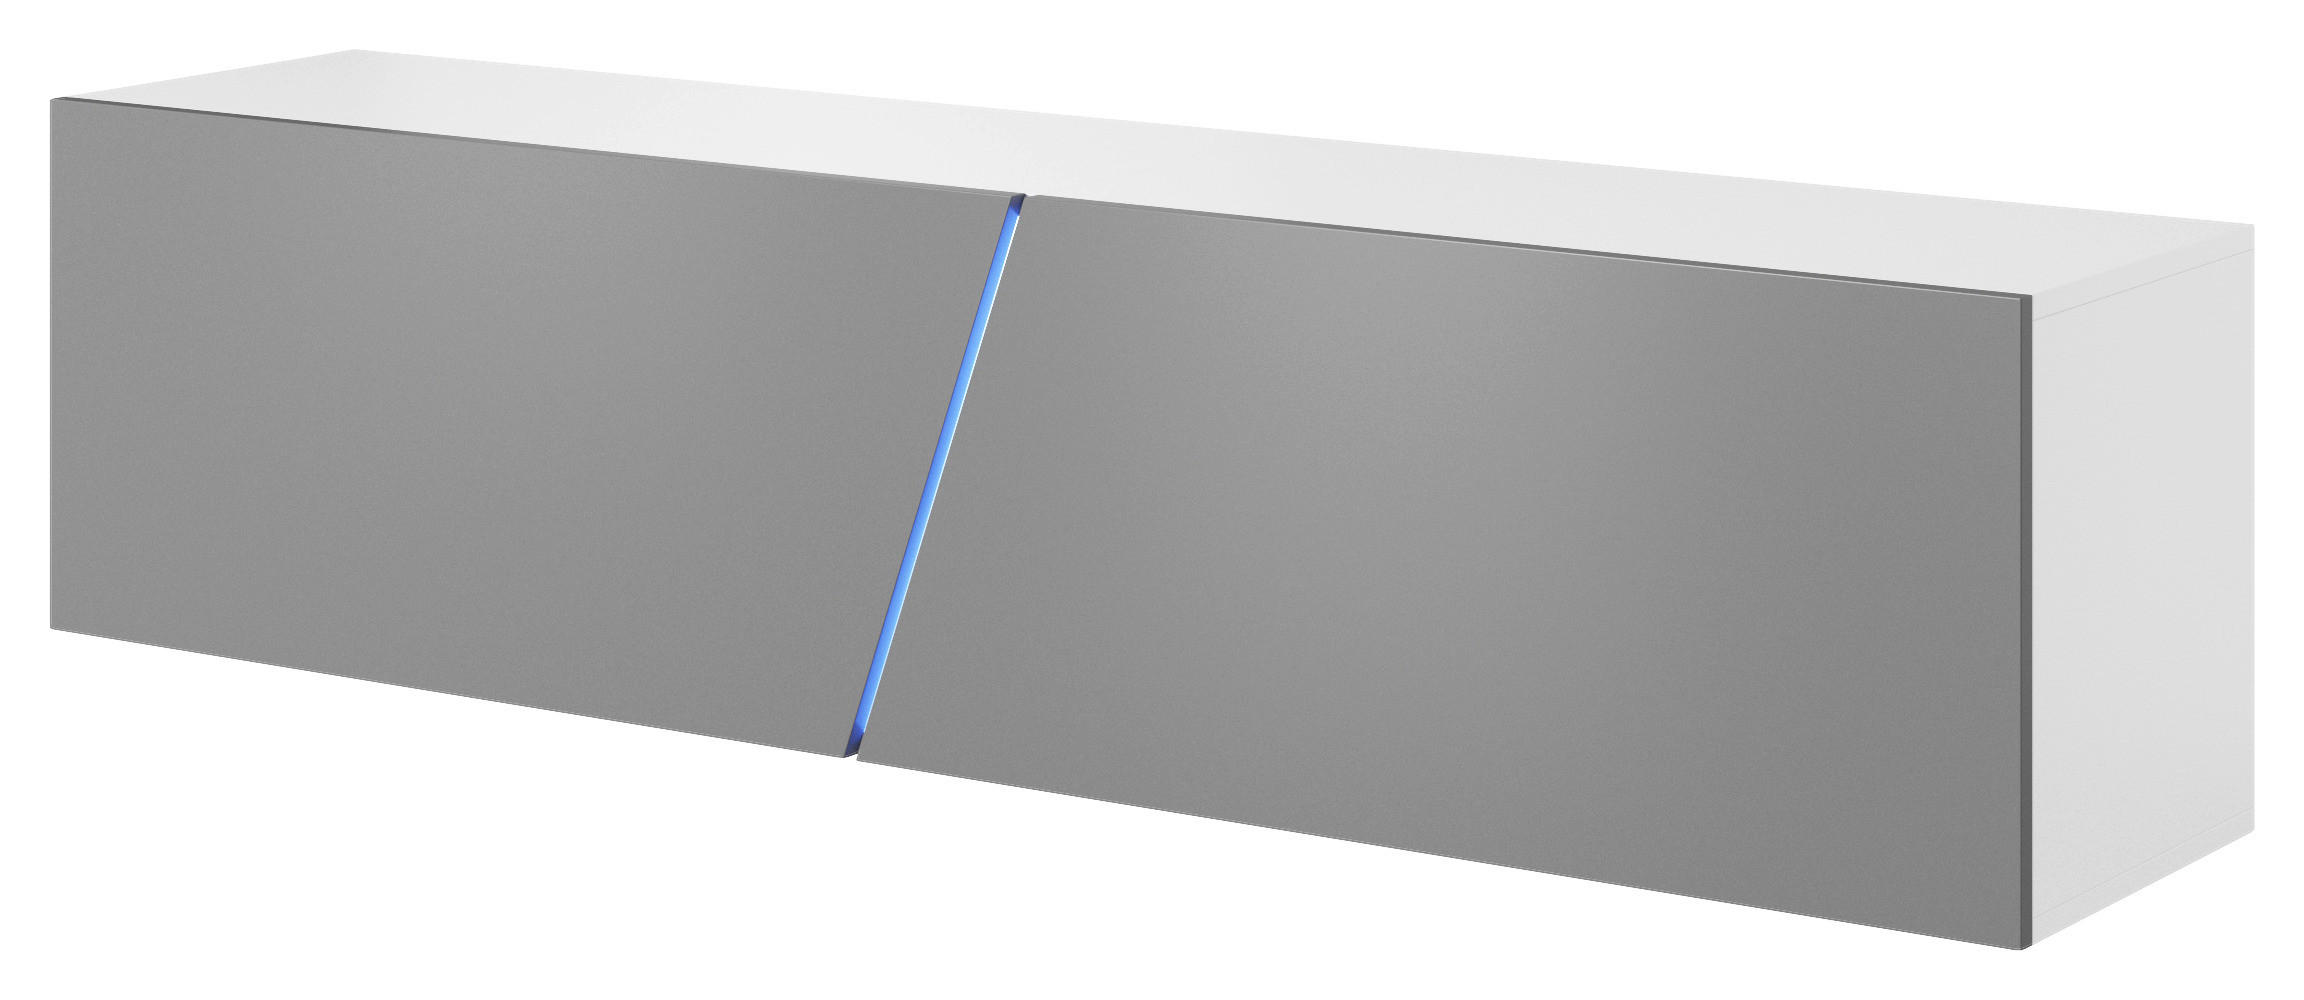 TV-Board Slant weiß matt grau Hochglanz B/H/T: ca. 160x50x40 cm